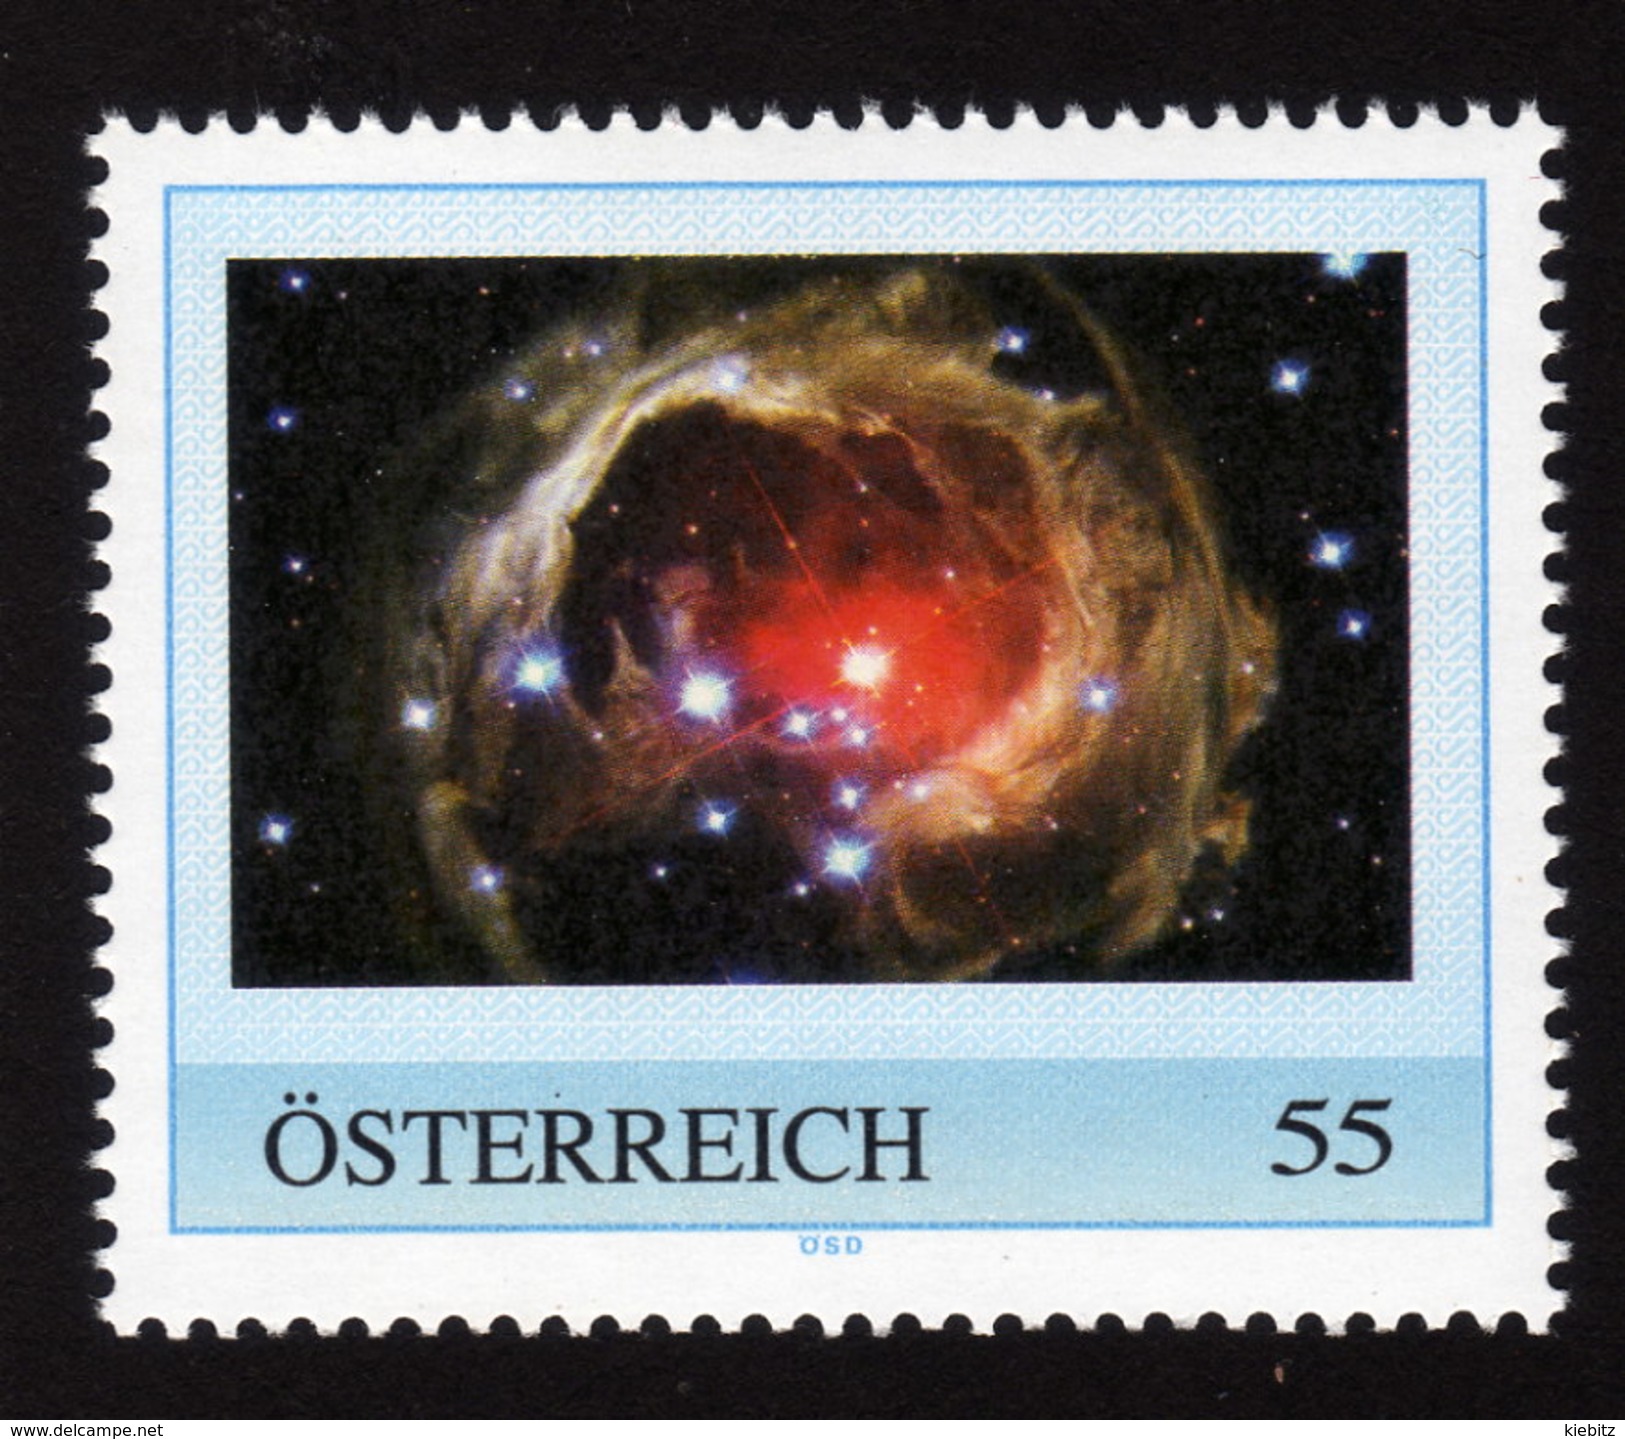 ÖSTERREICH 2009 ** Lichtecho Des Sterns V838 Monocerotis - PM Personalized Stamp MNH - Astronomie